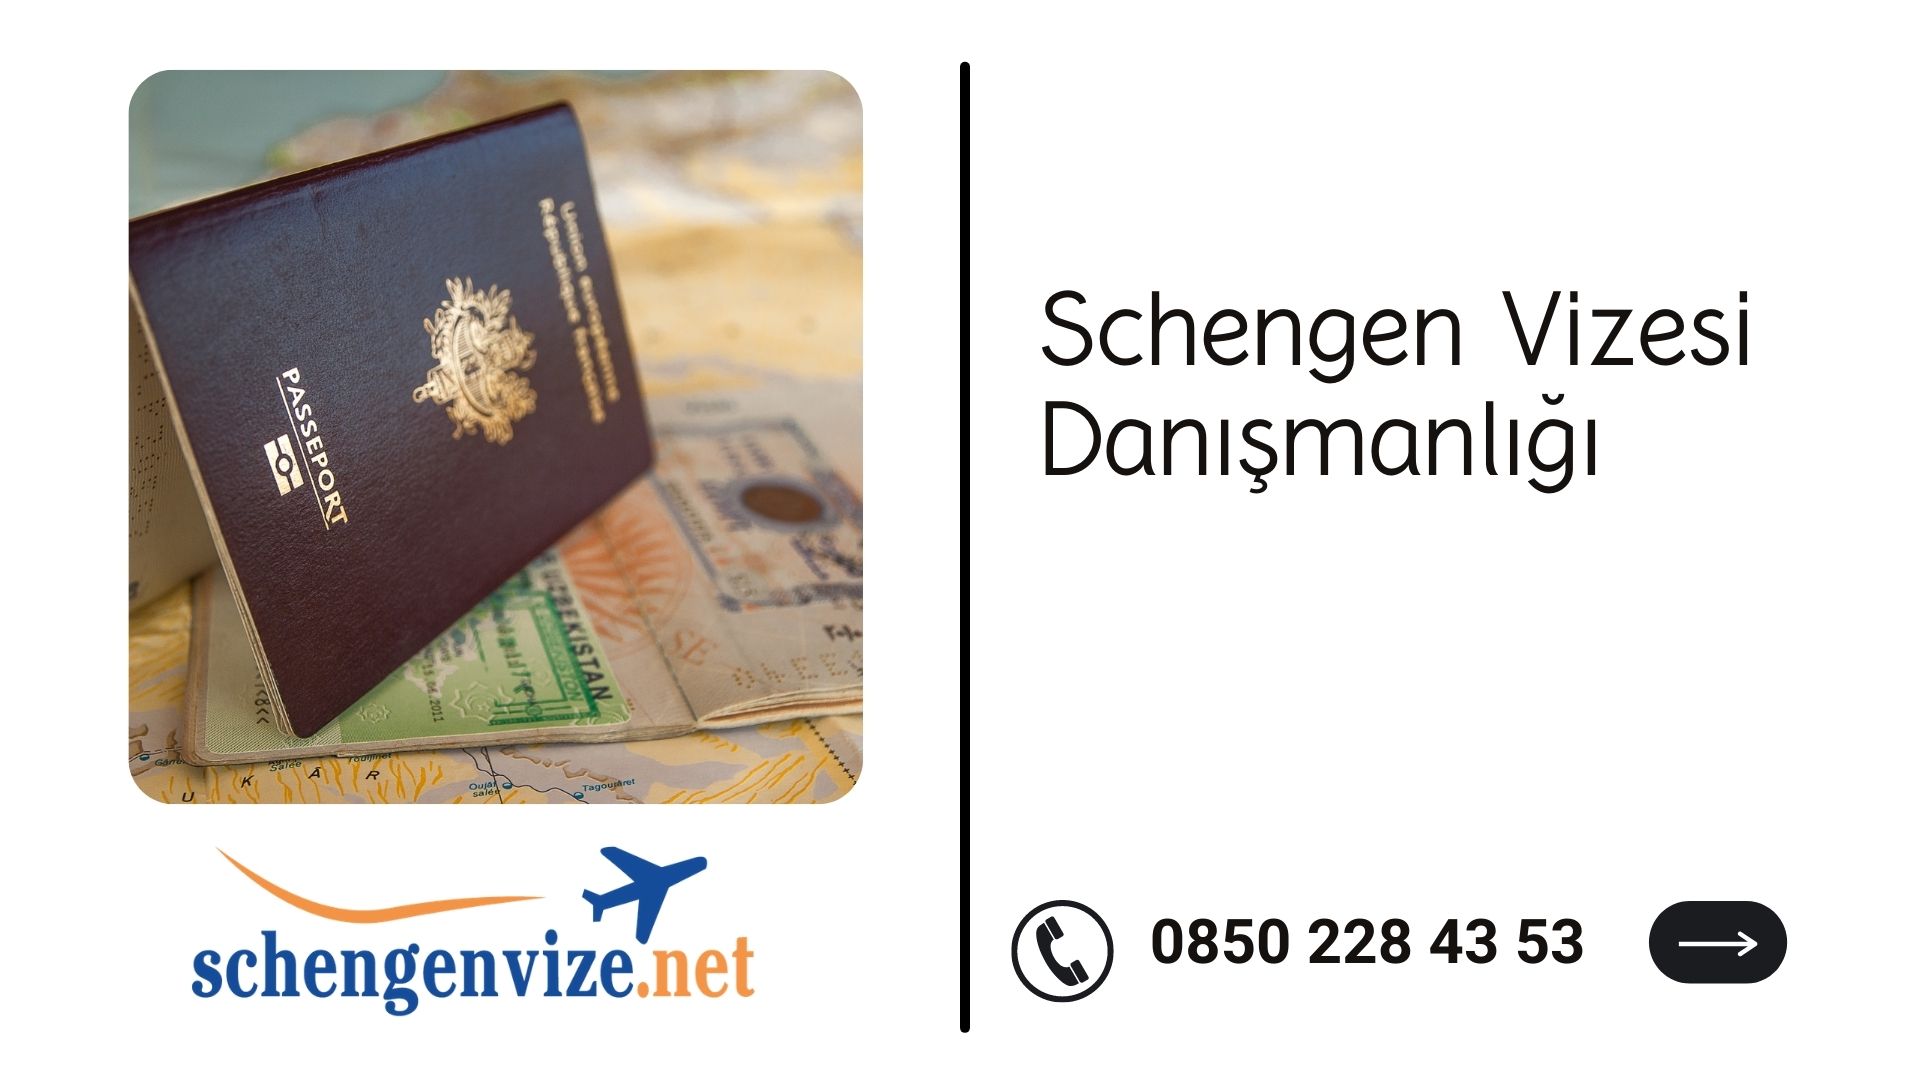 Schengen Vizesi Danışmanlığı